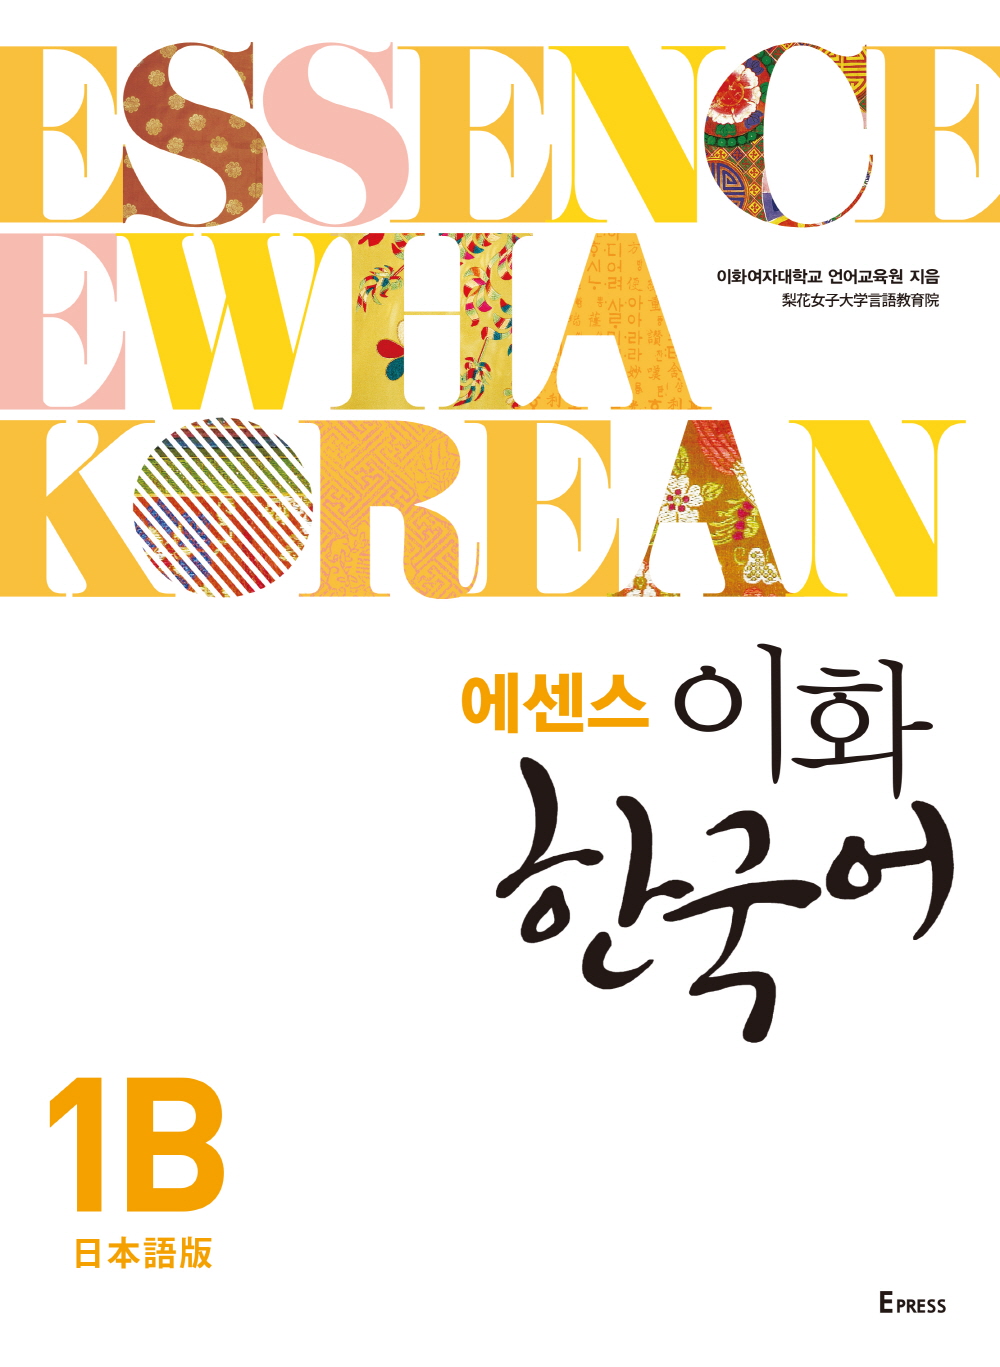 [EBOOK] 에센스 이화 한국어 1B(일본어판) 도서이미지